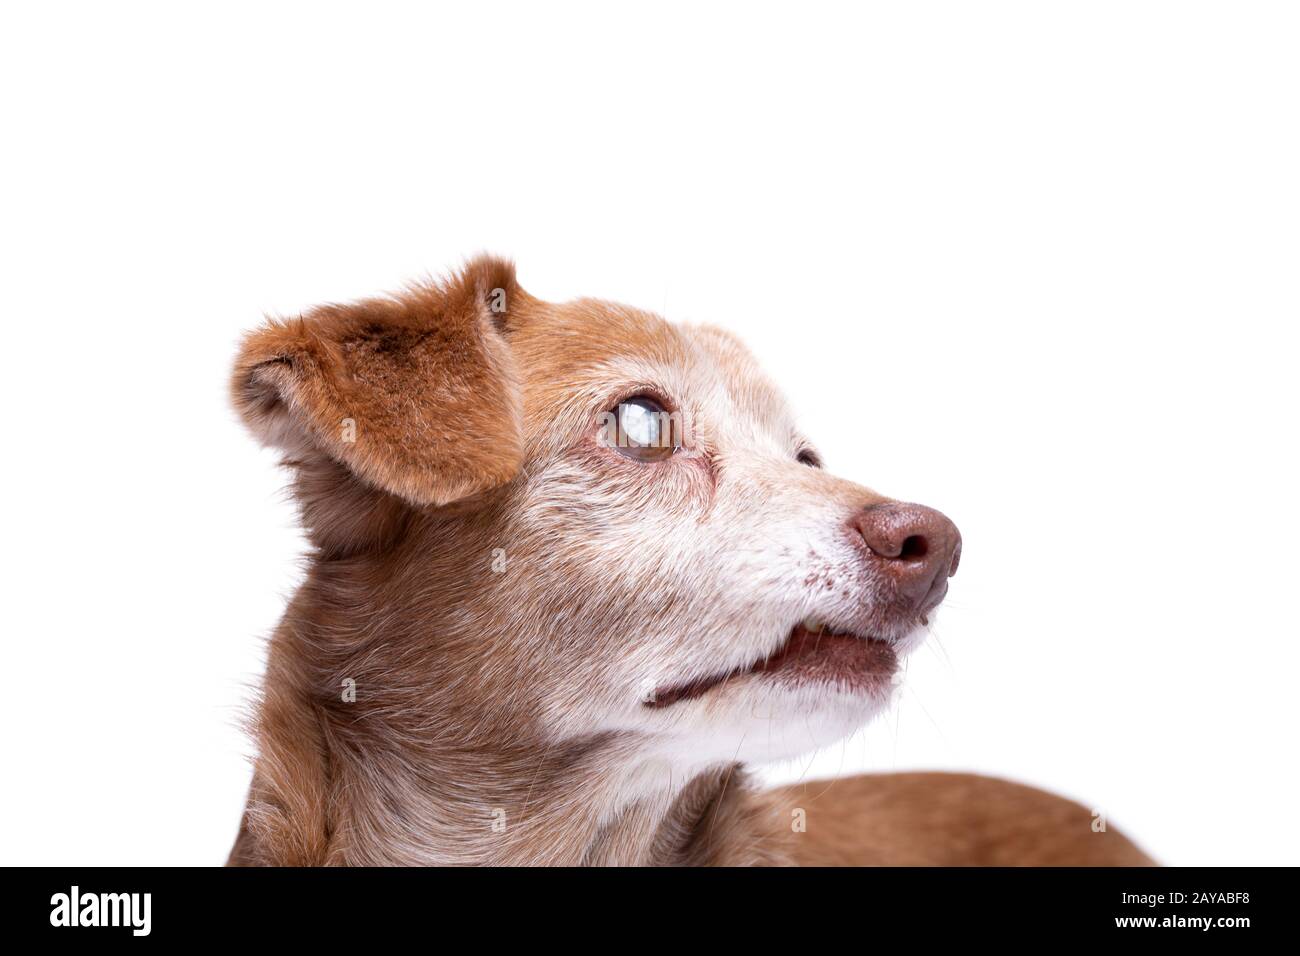 Cane anziano con cataratta negli occhi isolato su uno sfondo bianco. Foto Stock